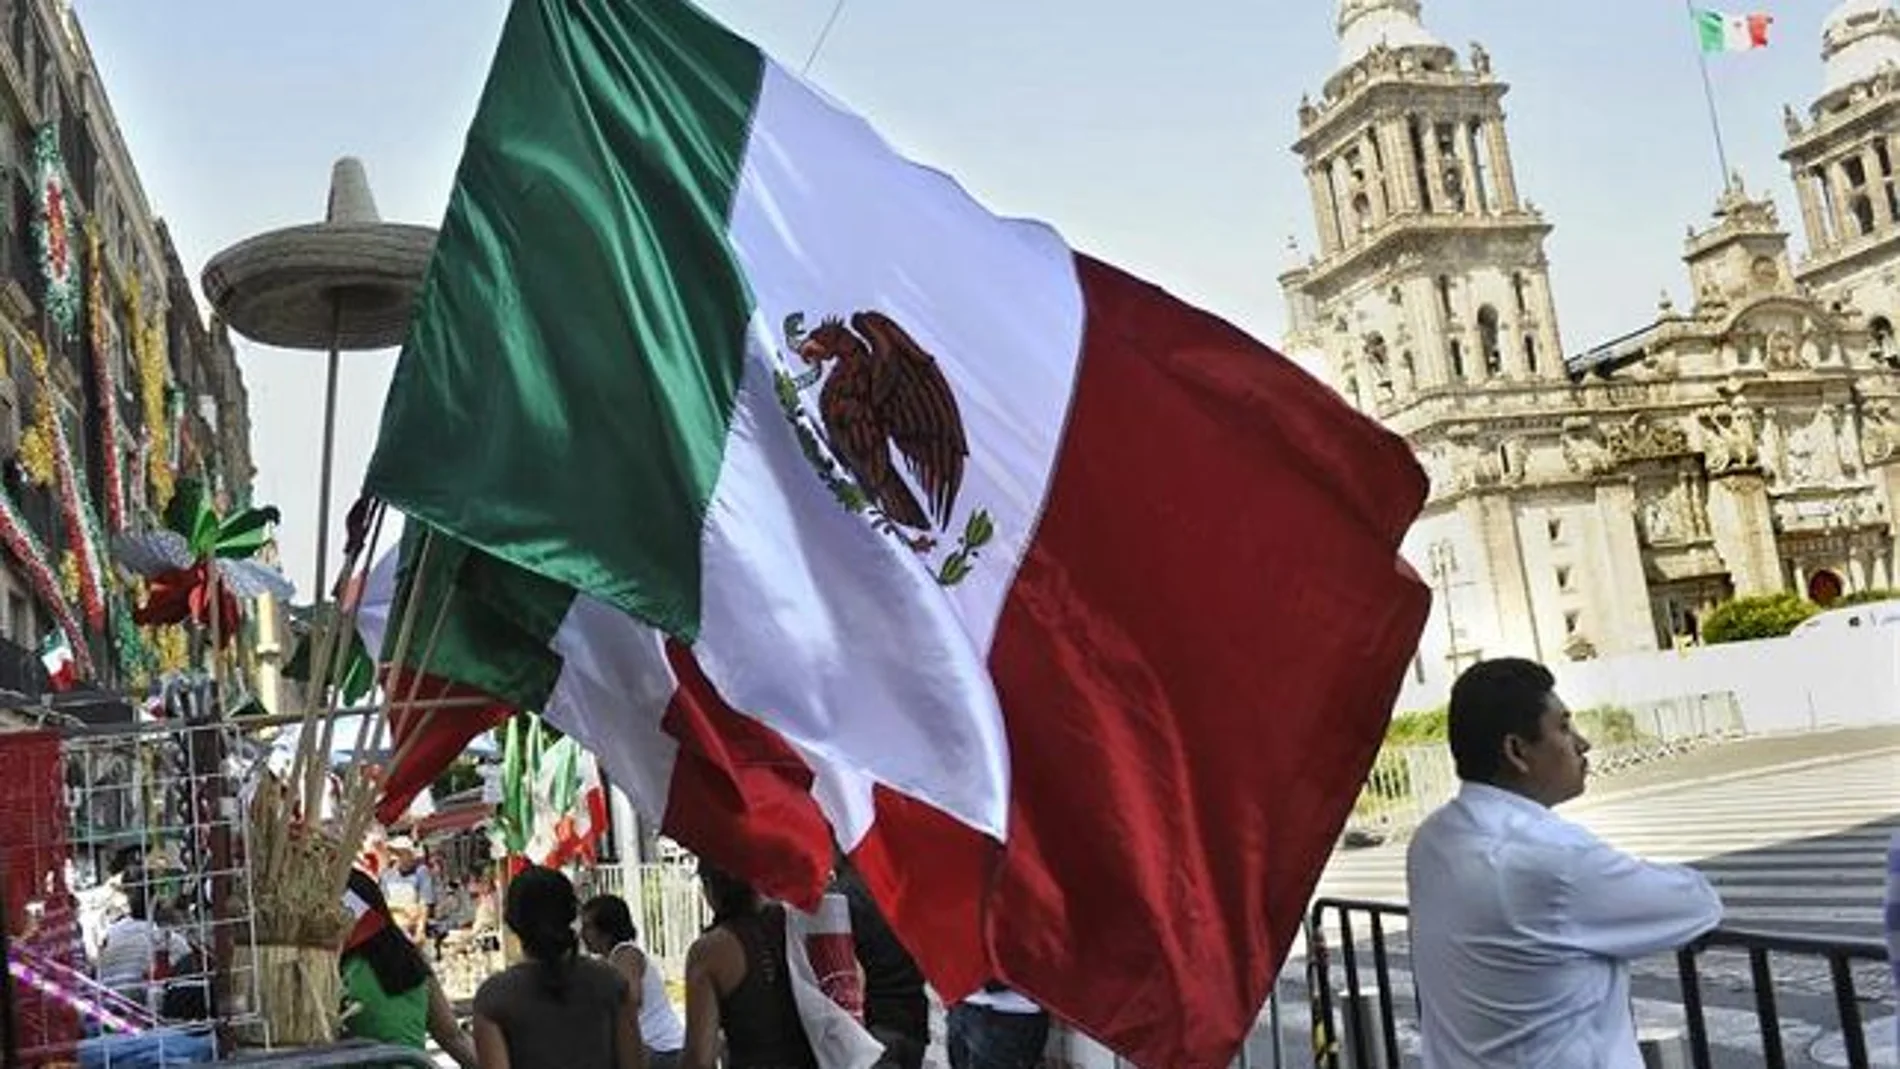 El 70% de los mexicanos tienen expectativas positivas con respecto a la economía del país en el próximo gobierno liderado por Andrés Manuel López Obrador